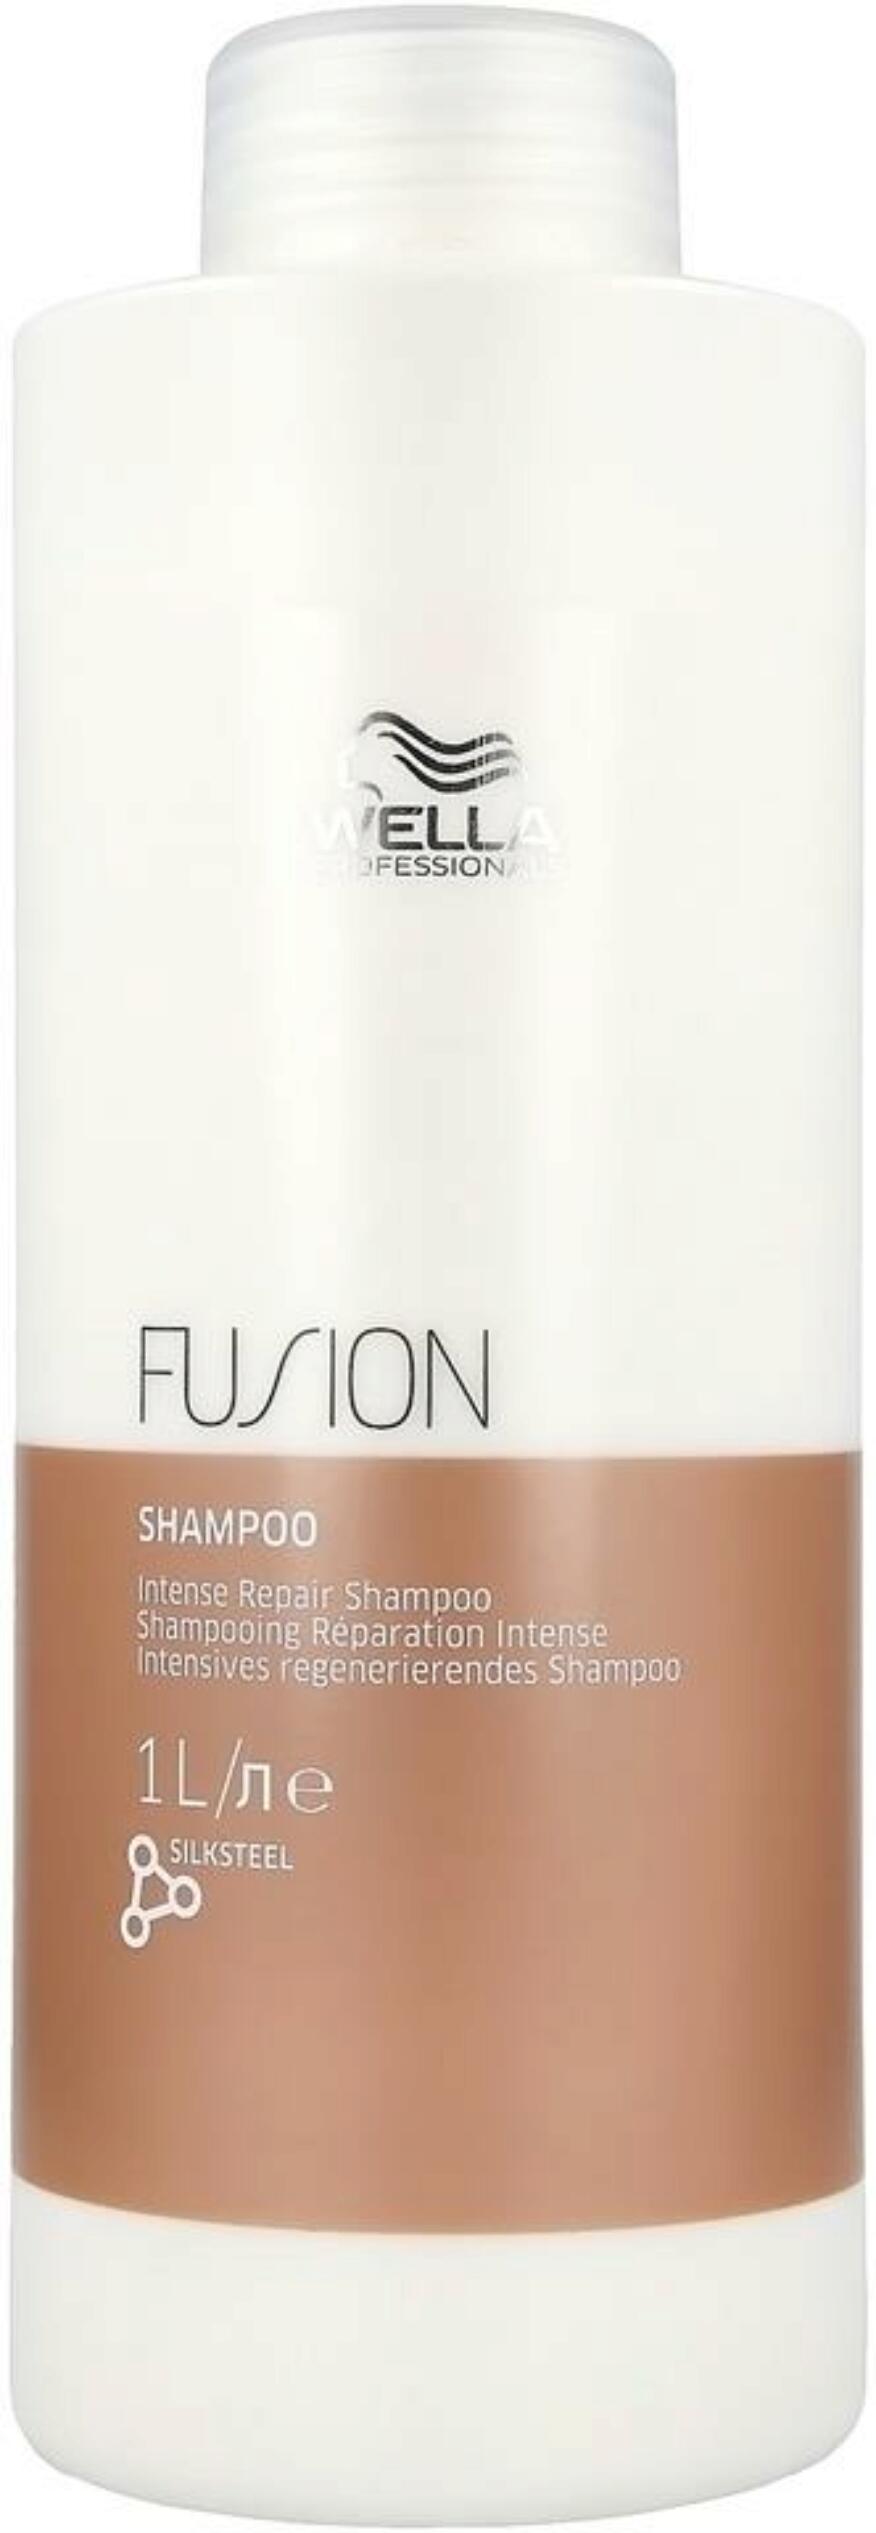 Wella Fusion Intense Repair Shampoo [1Ltr]